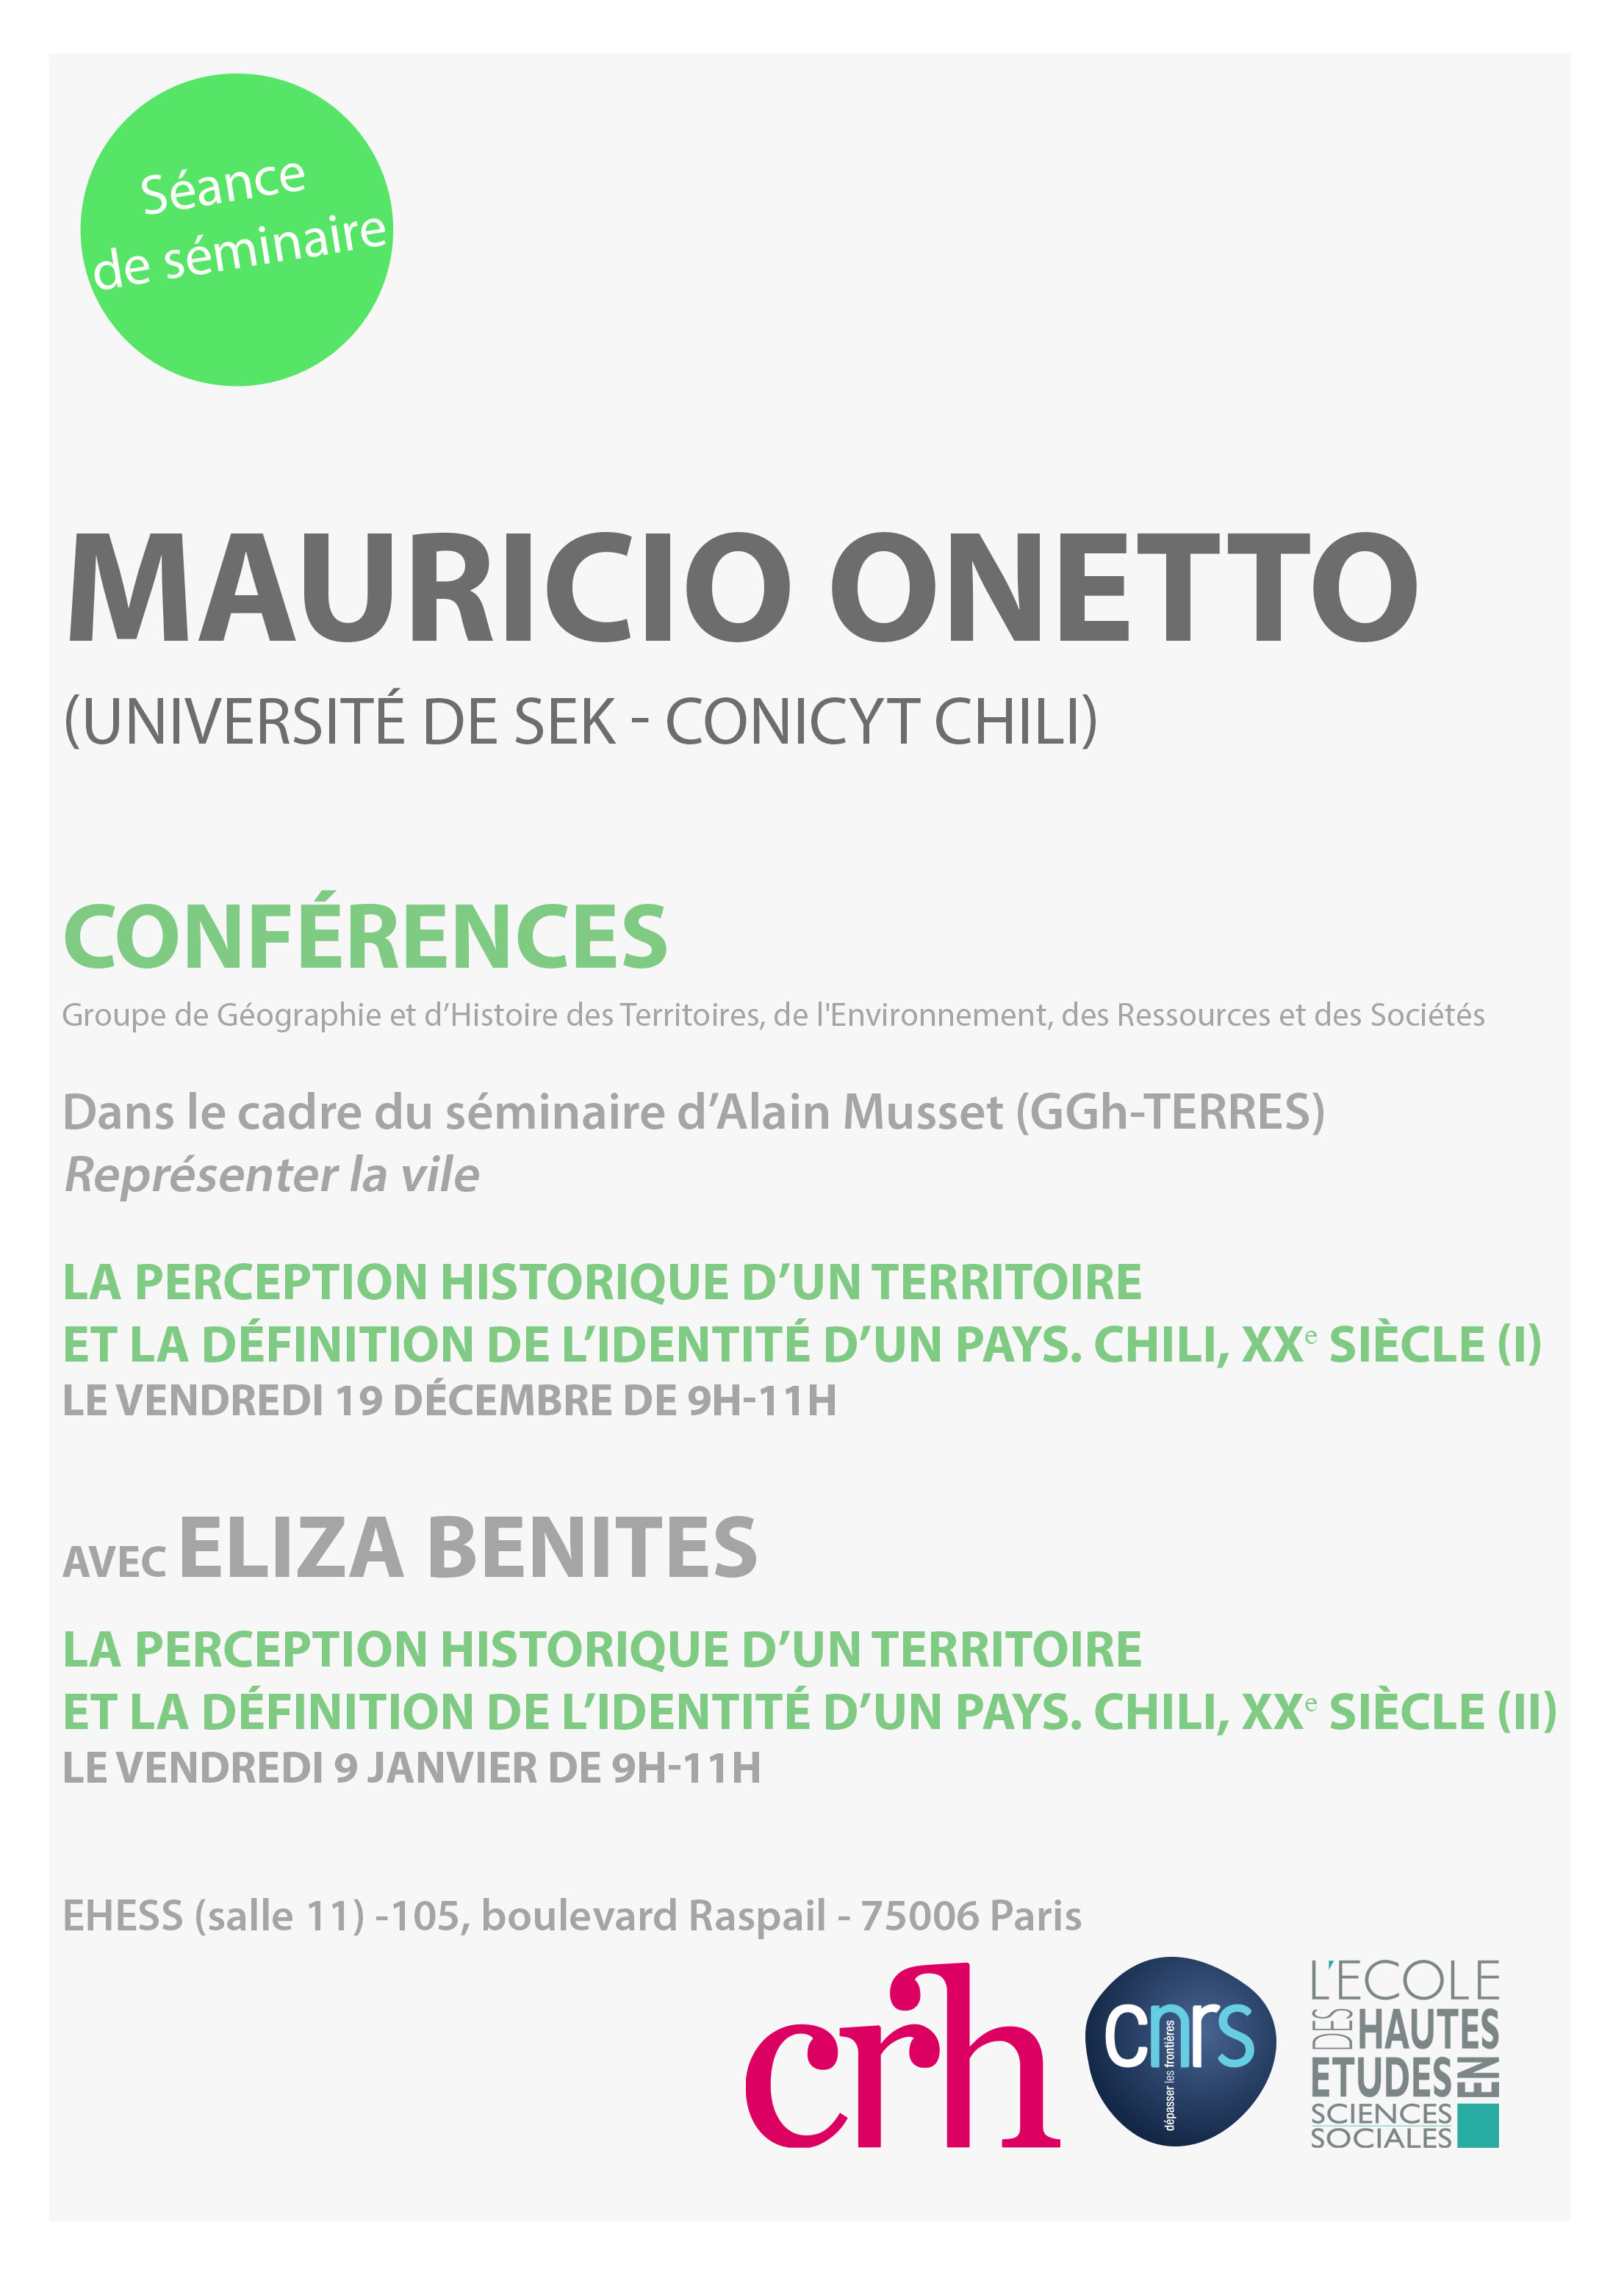 Conférences de Mauricio Onetto